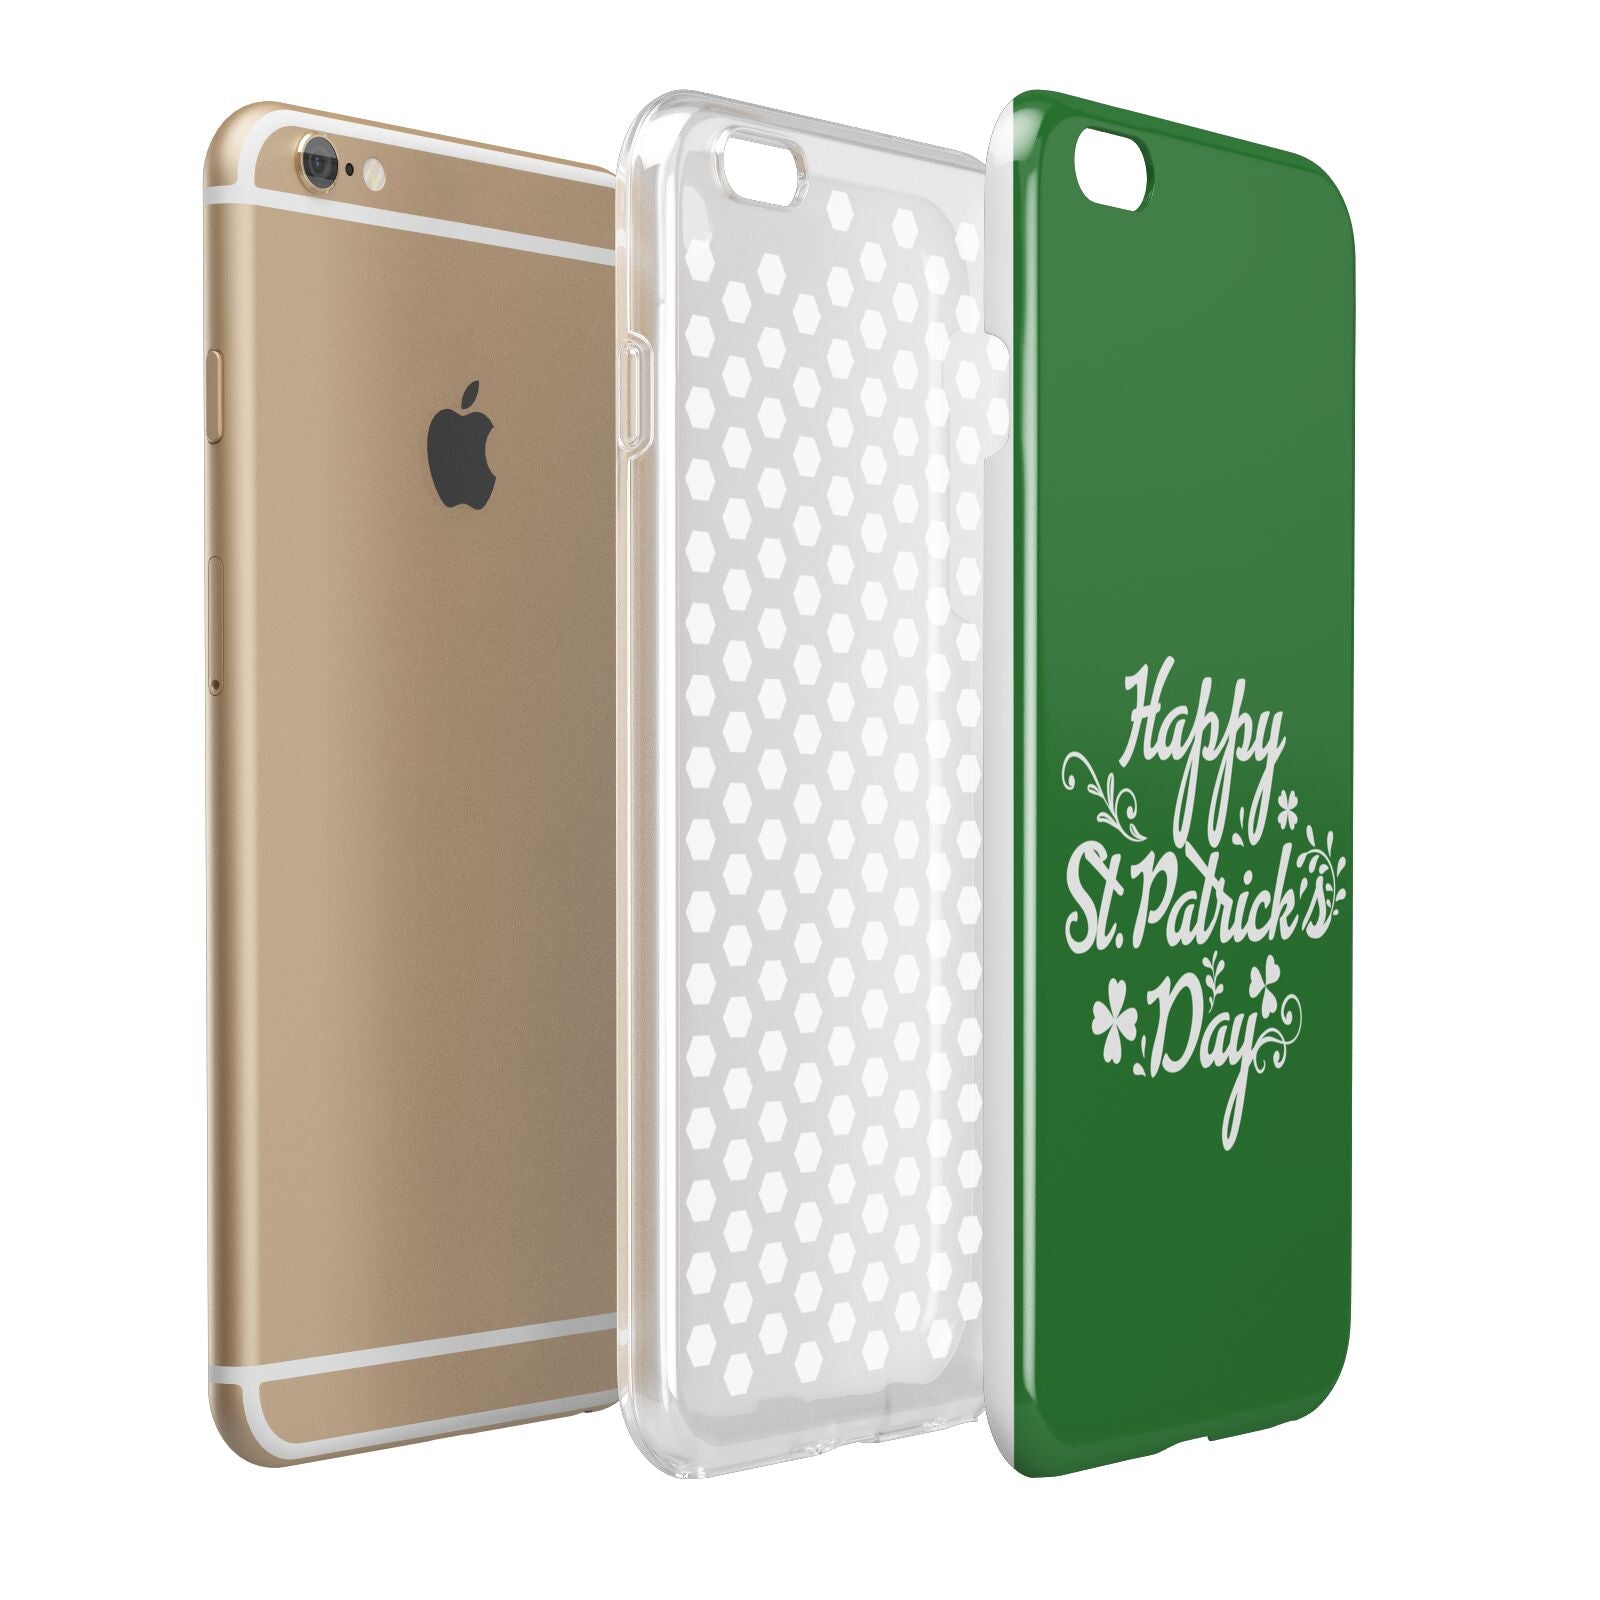 St Patricks Day Apple iPhone 6 Plus 3D Tough Case Expand Detail Image